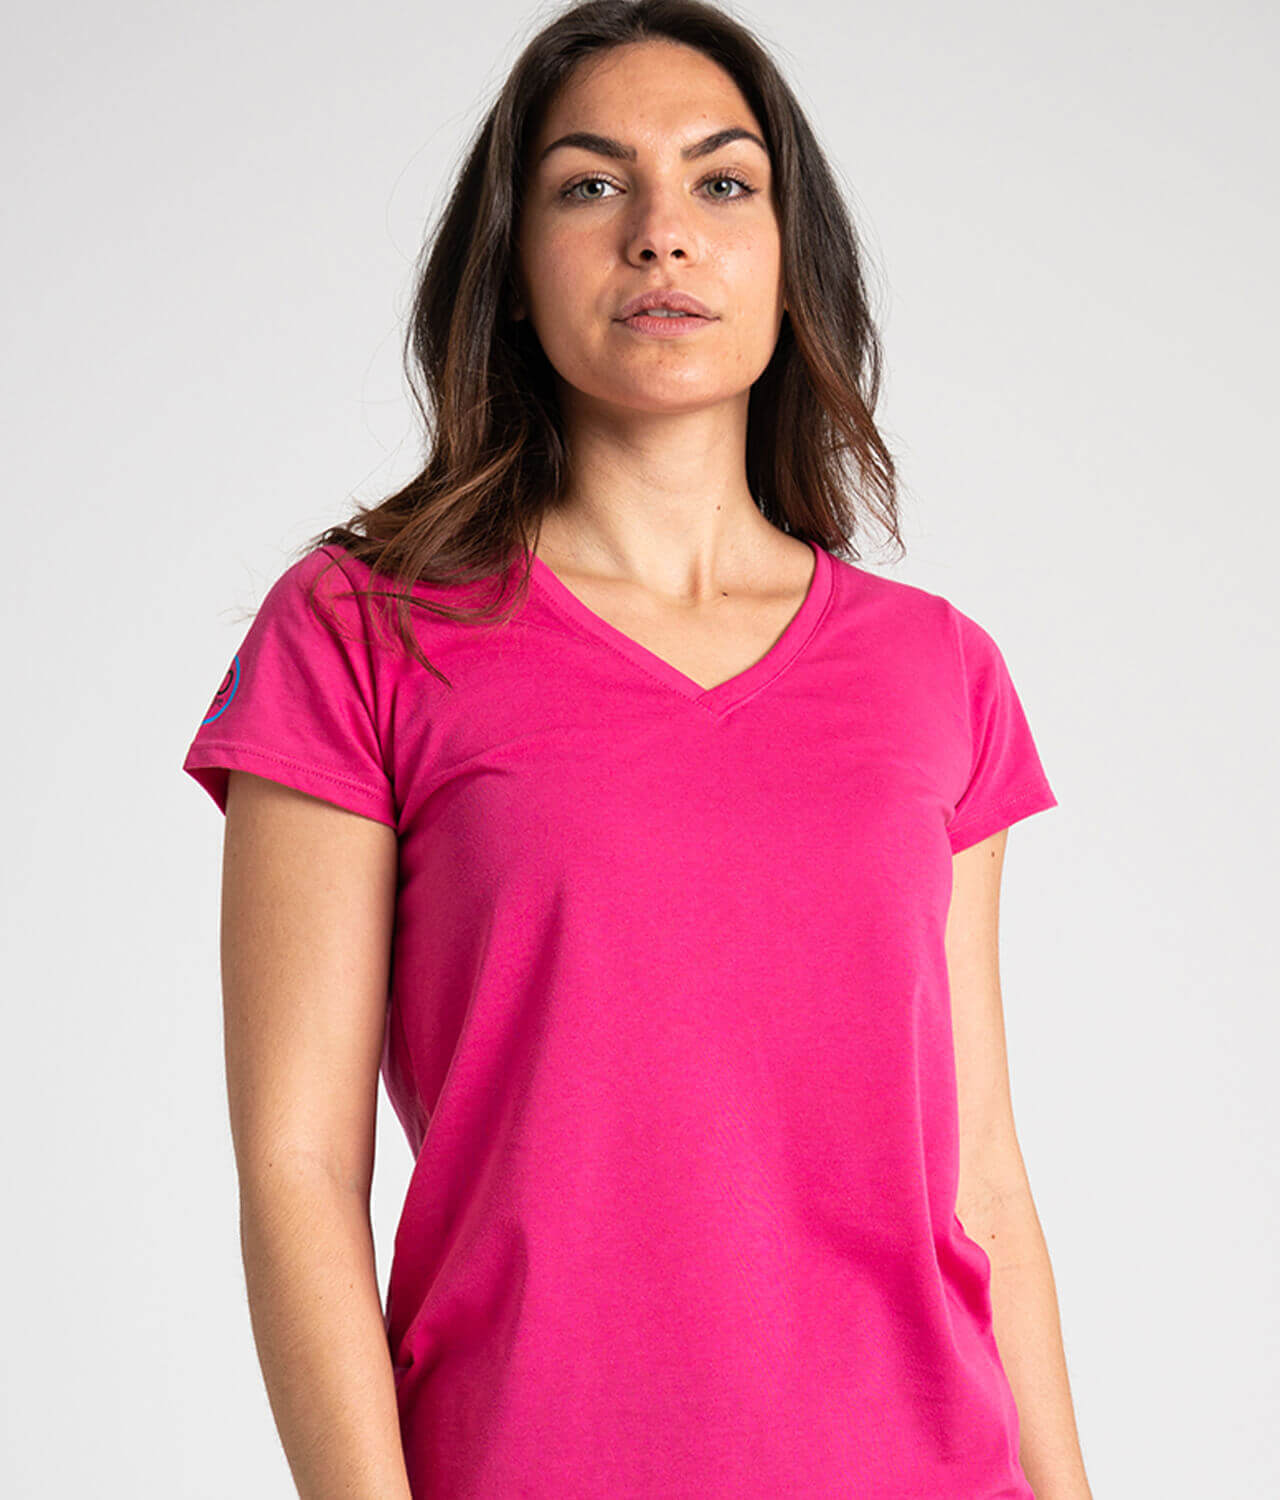 Camiseta antimosquitos mujer cuello pico rosa 1